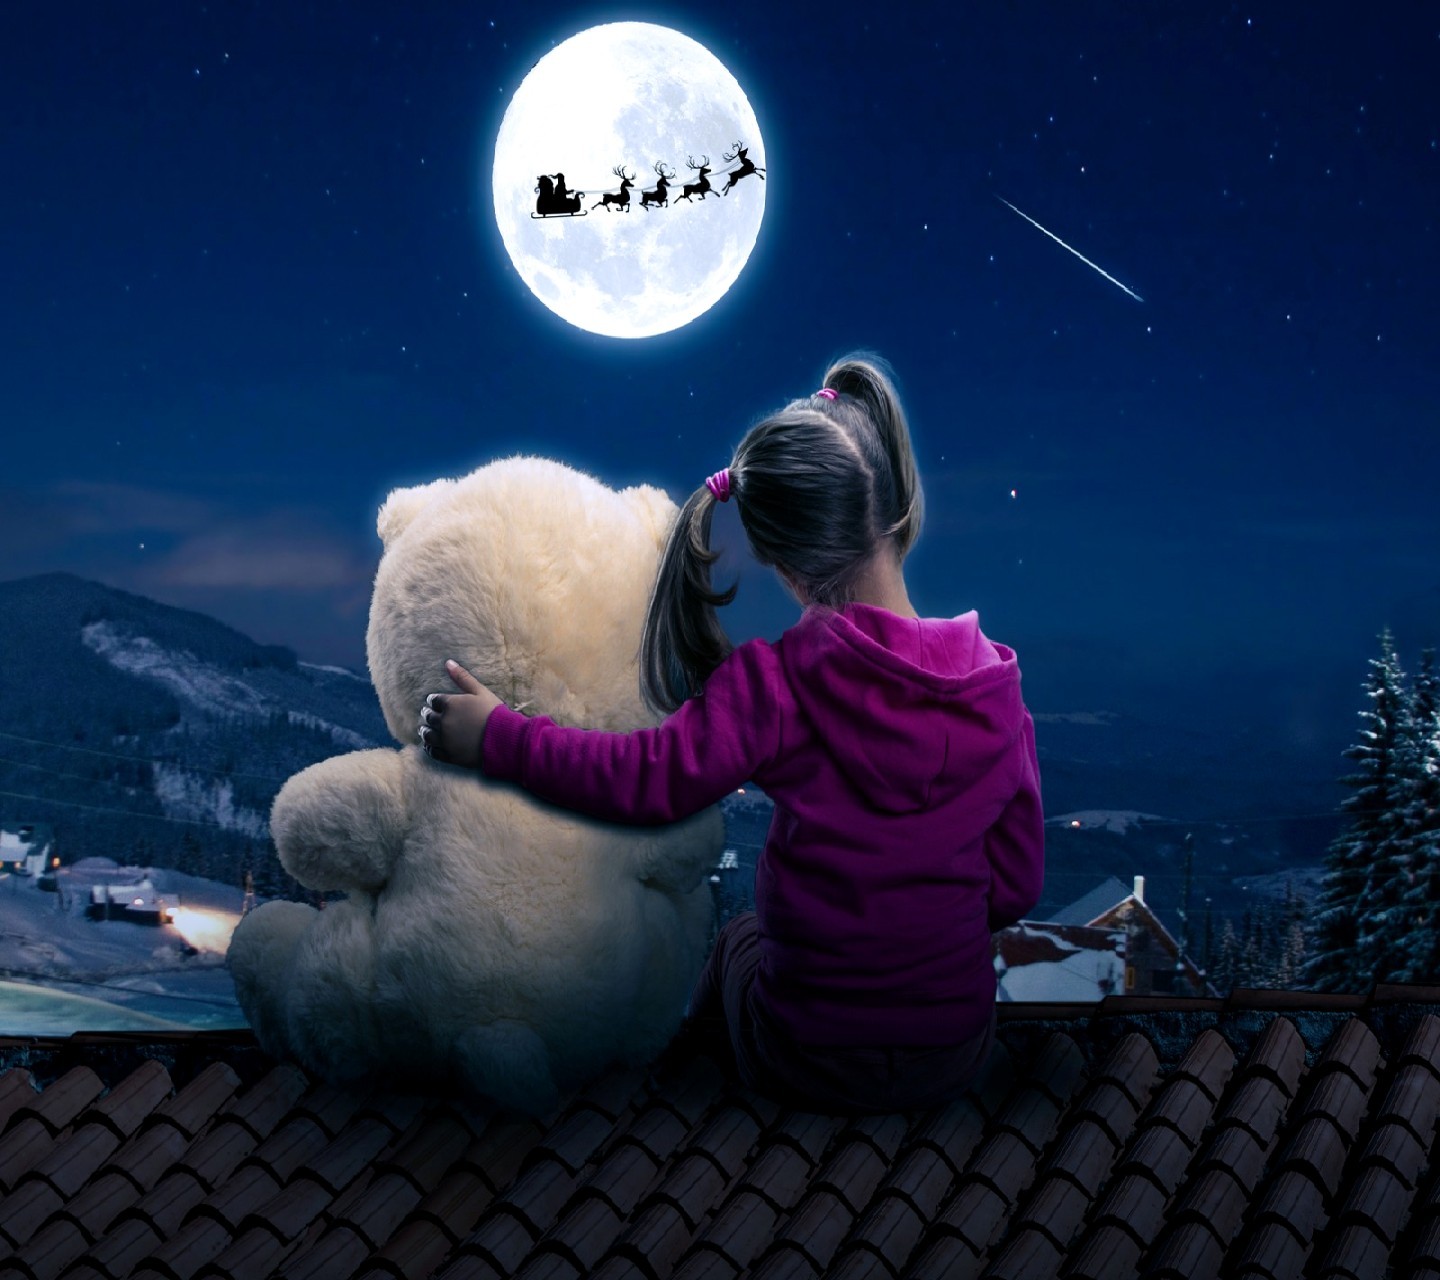 General 1440x1280 digital art Moon children night sky rooftops